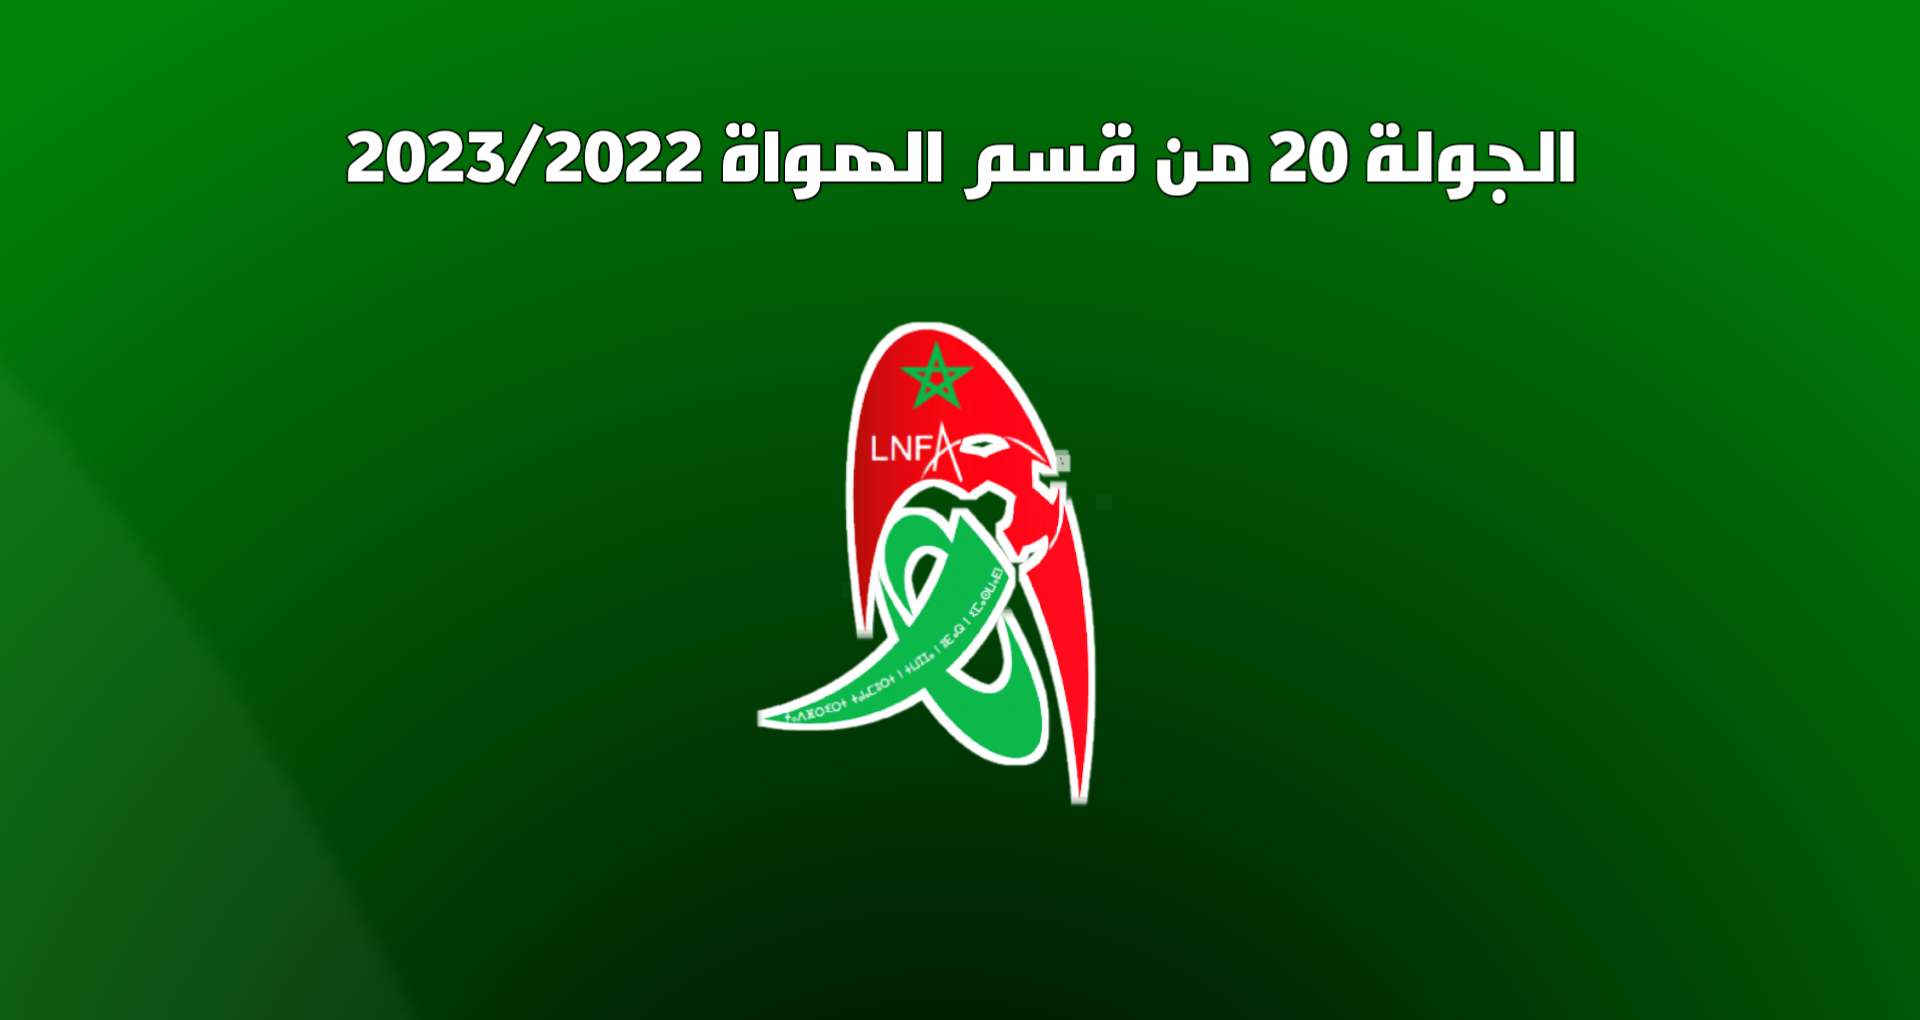 مواعيد الجولة 20 من القسم الوطني هواة 2023/2022